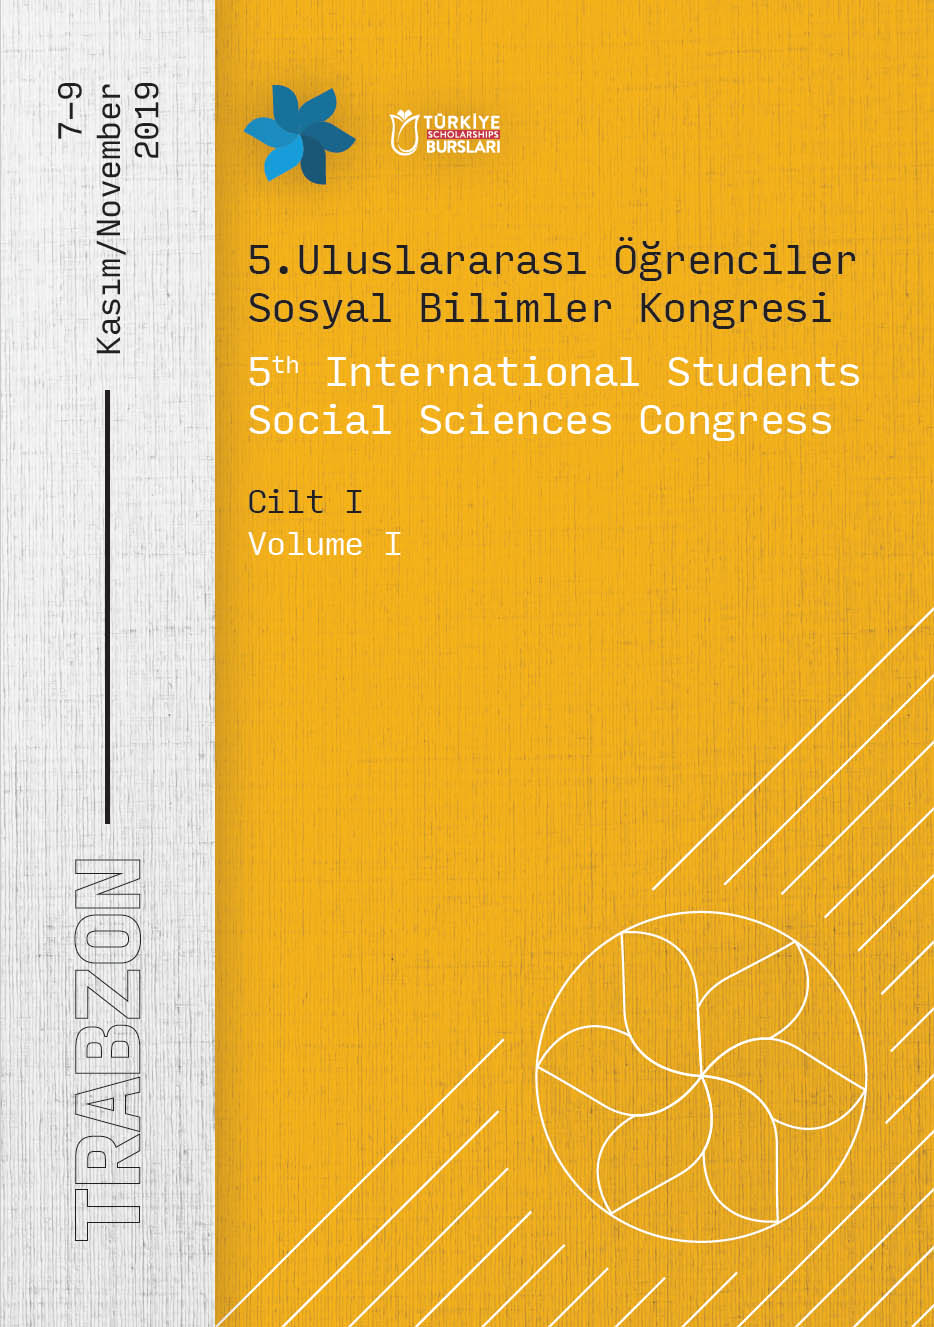 5. Uluslararası Öğrenciler Sosyal Bilimler Kongresi Bildiriler Kitabı